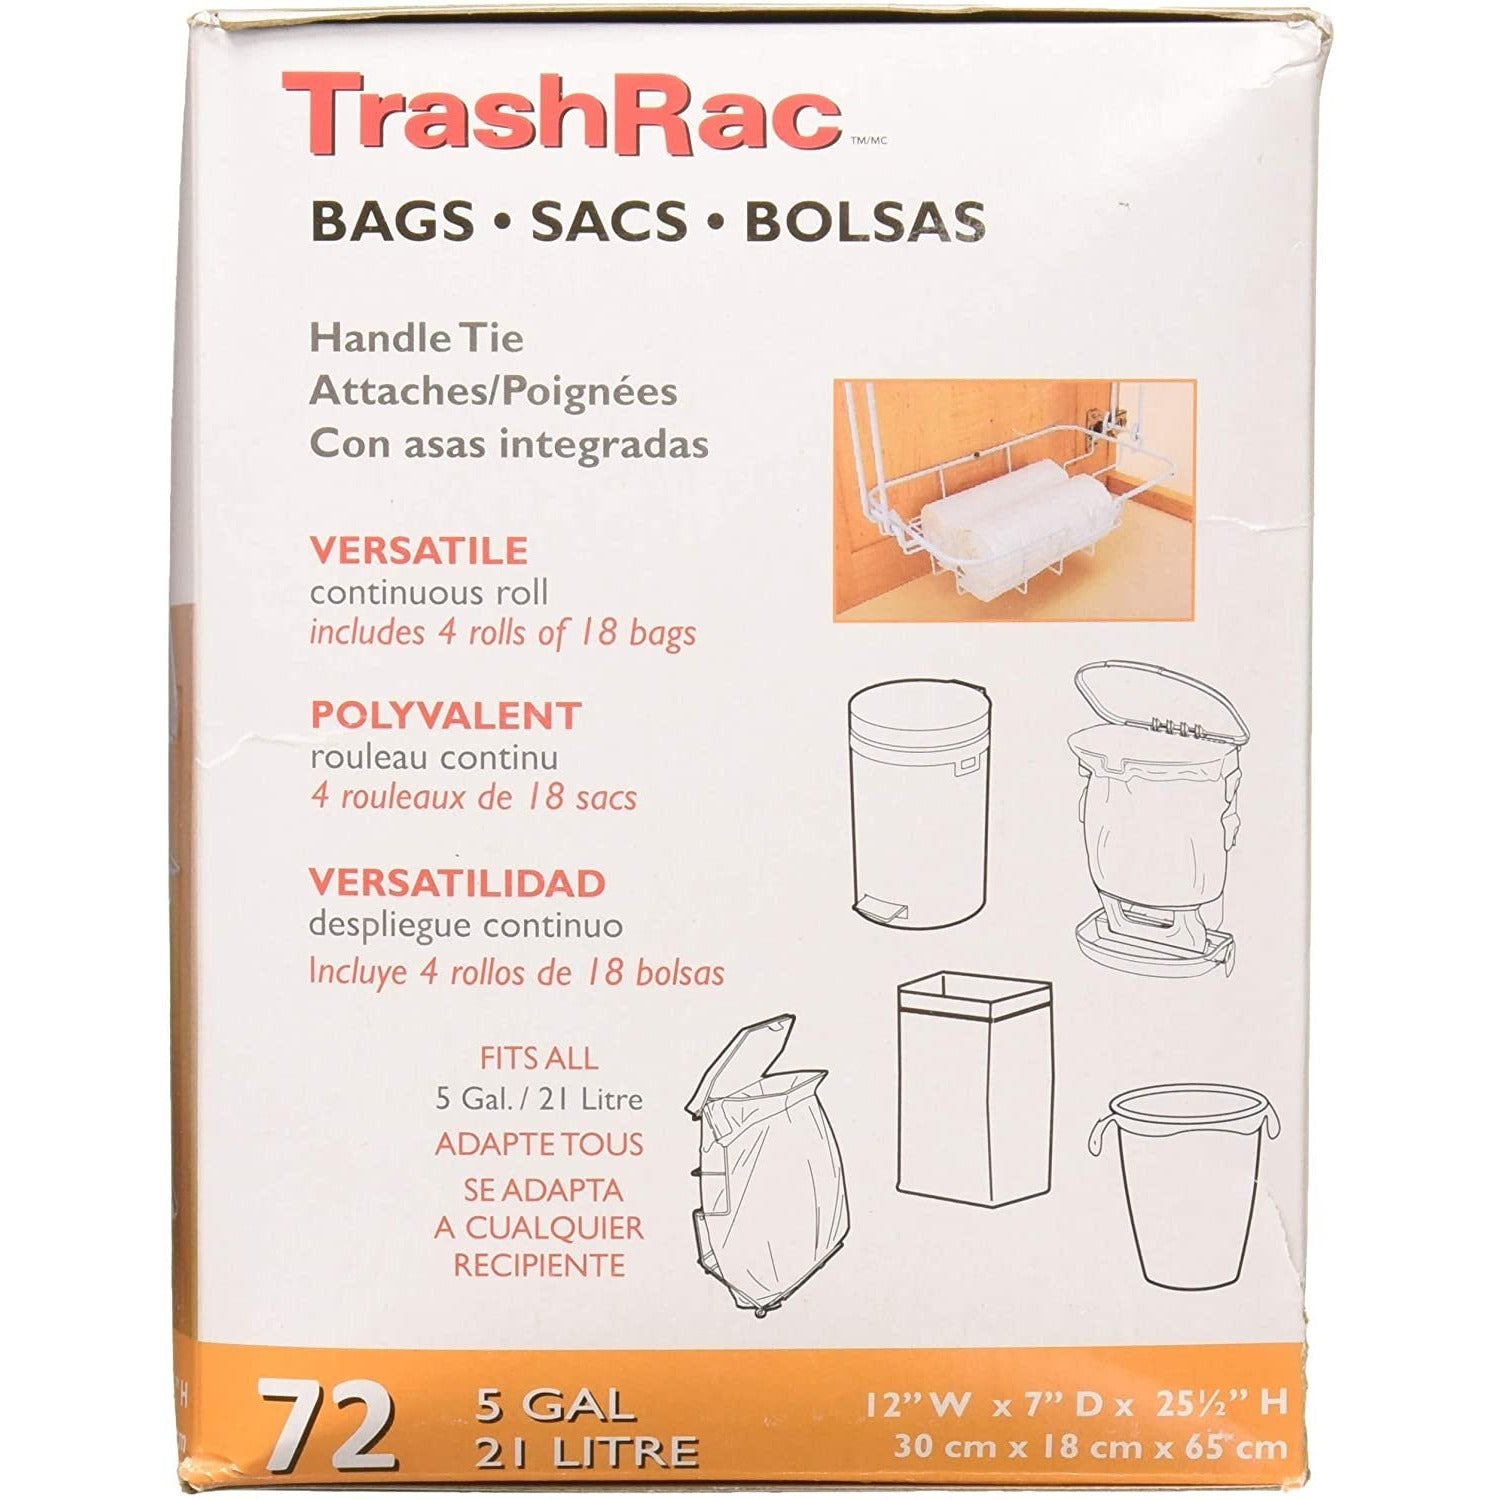 Sunbeam TrashRac Bags, Handle Tie, 5 Gal - 20 bags